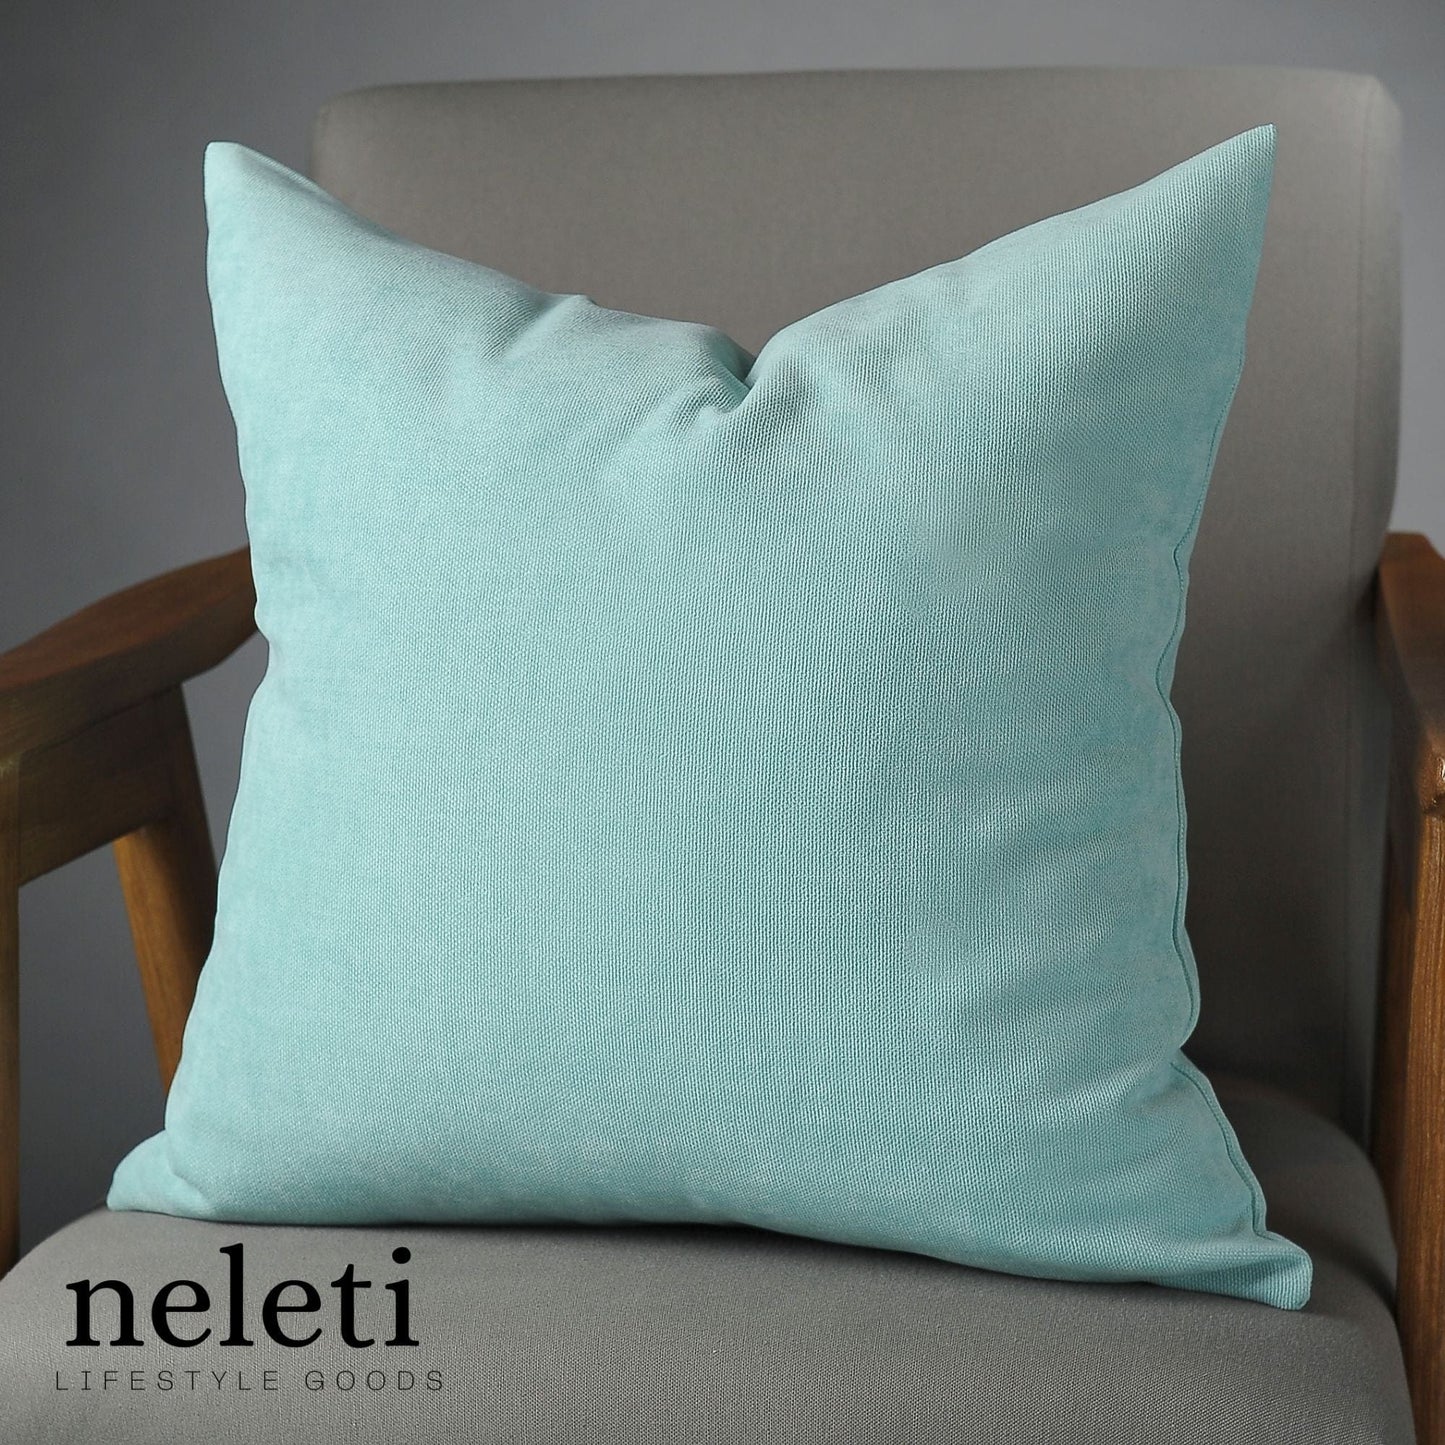 neleti.com-light-blue-accent-pillow-cover